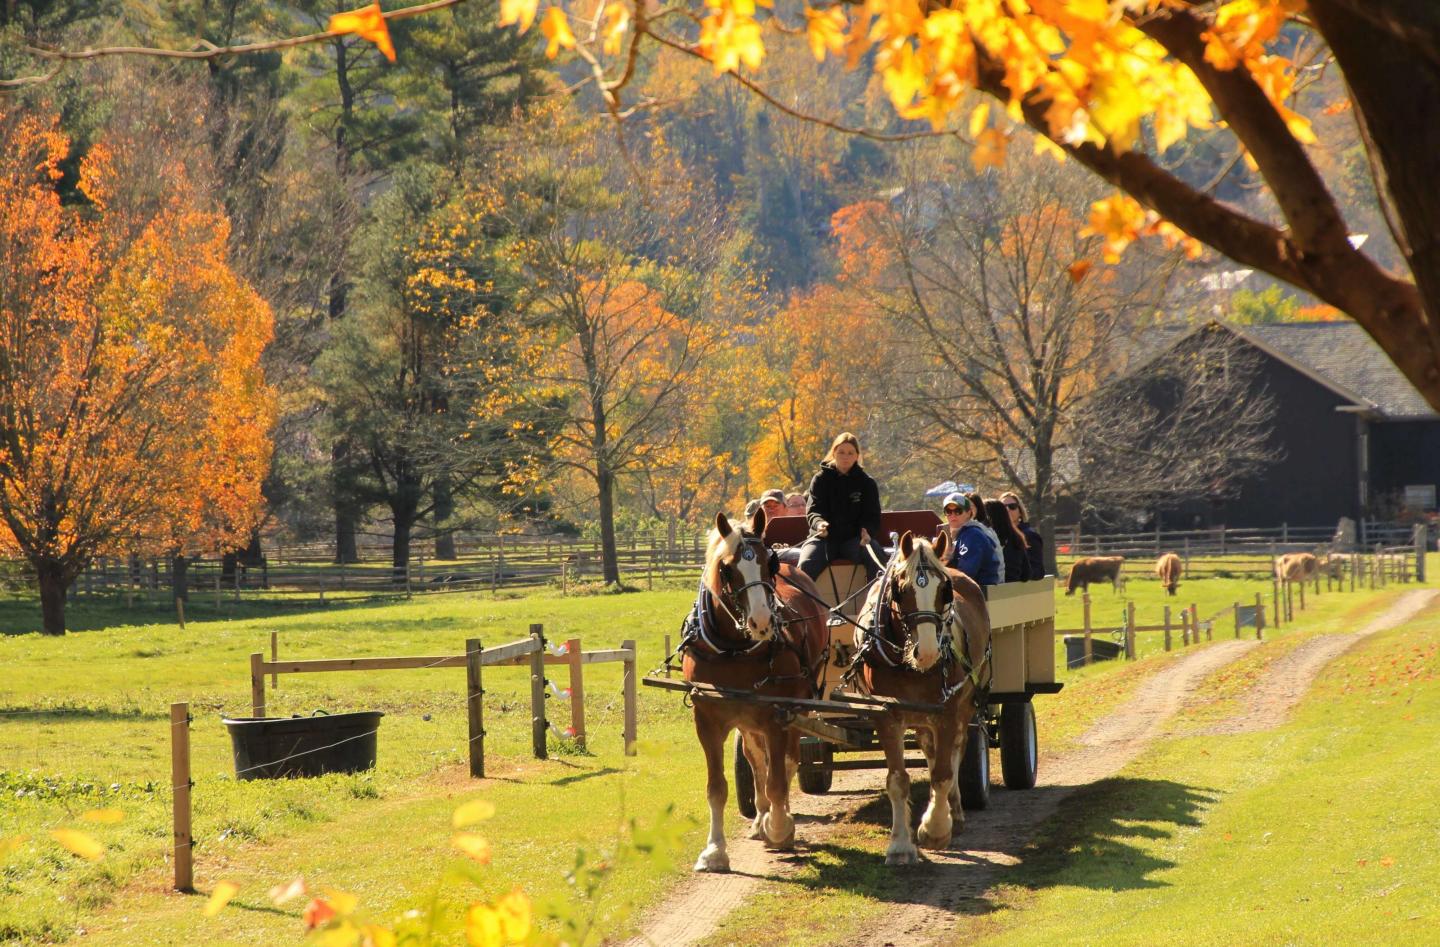 Wagon rides at Billings Farm during fall foliage